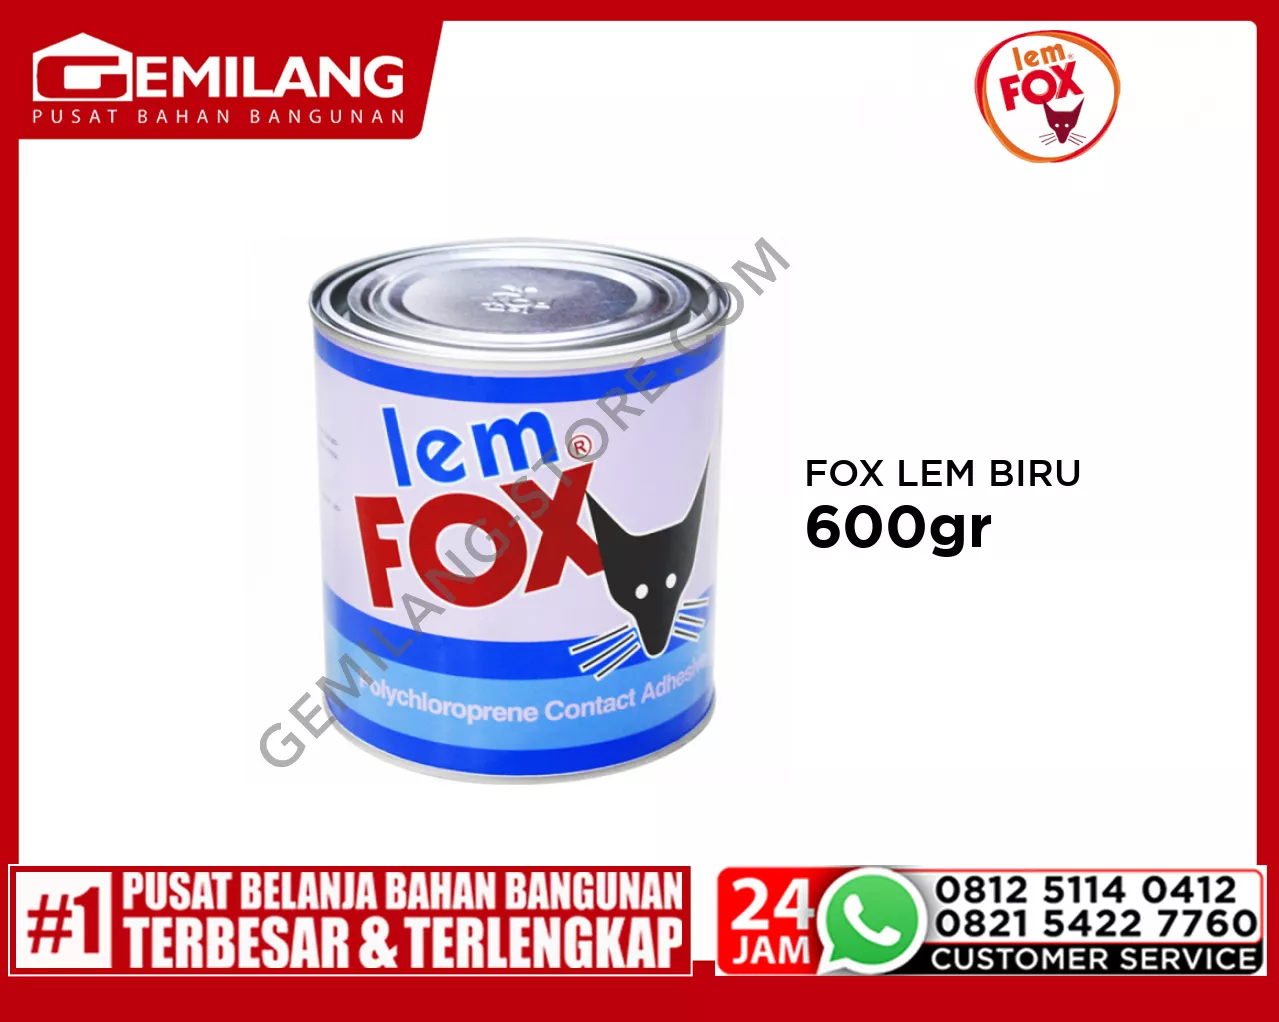 FOX LEM BIRU 600gr